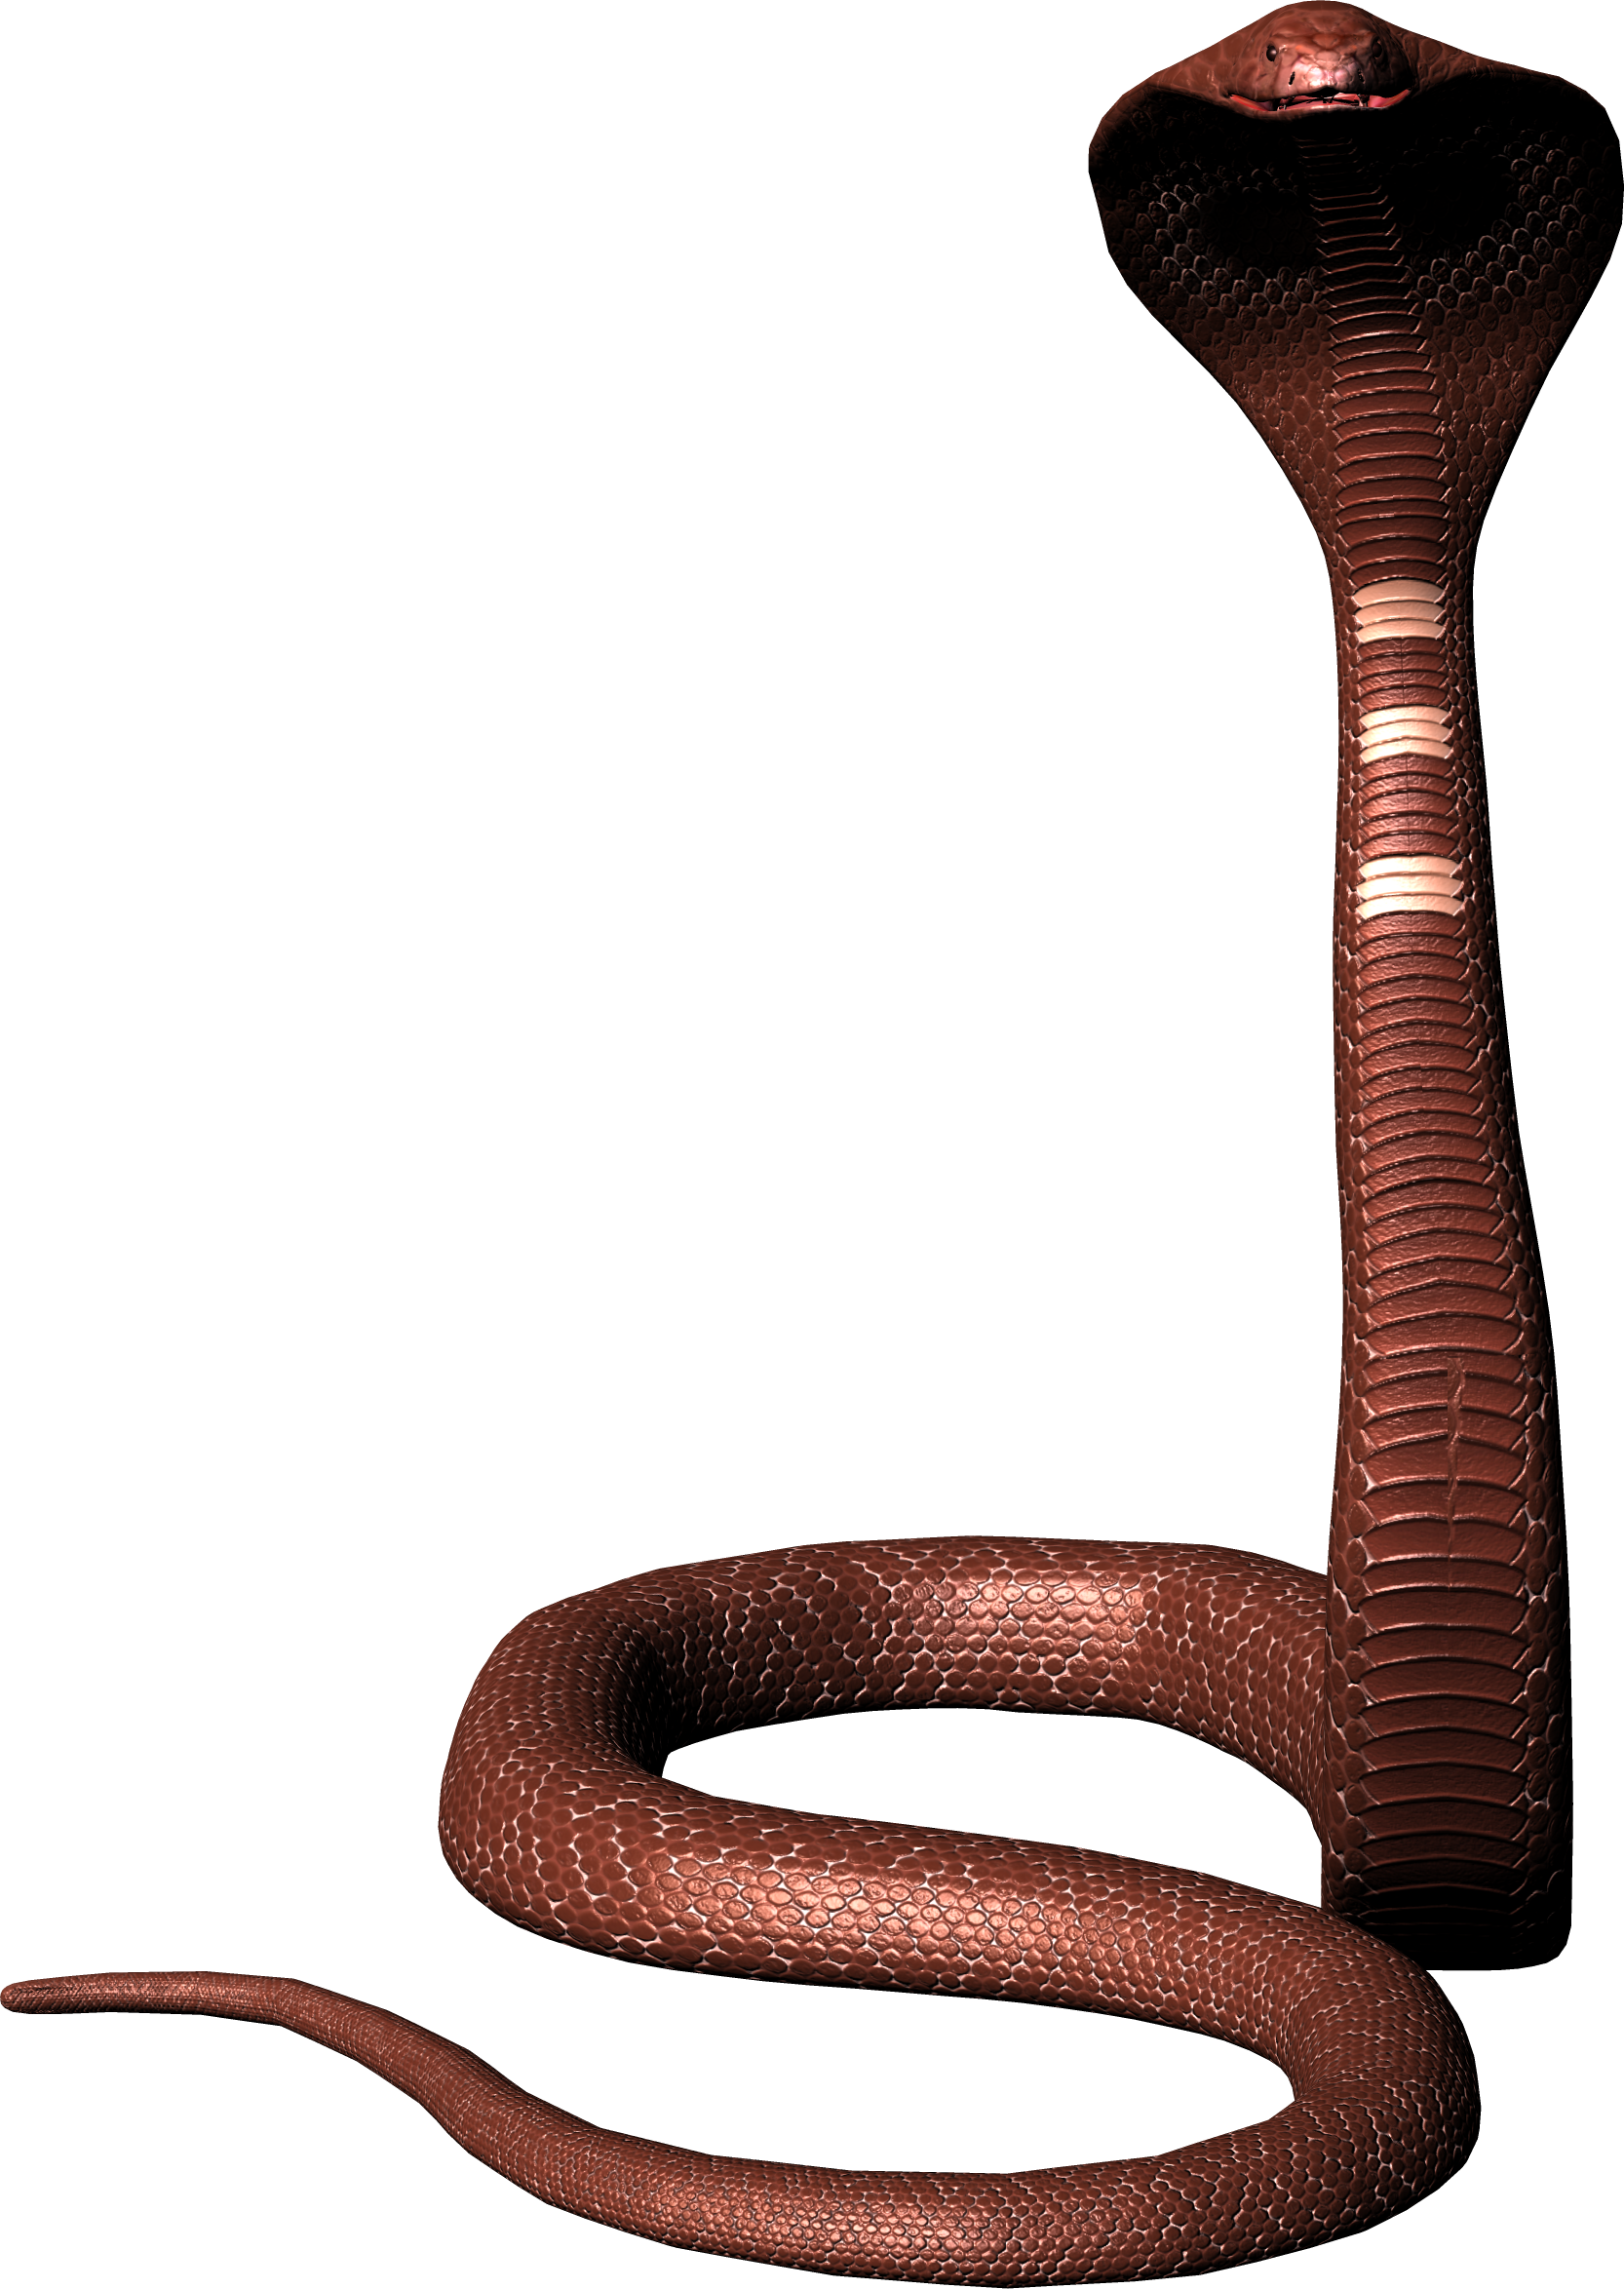 Venimeux Serpent Telecharger PNG